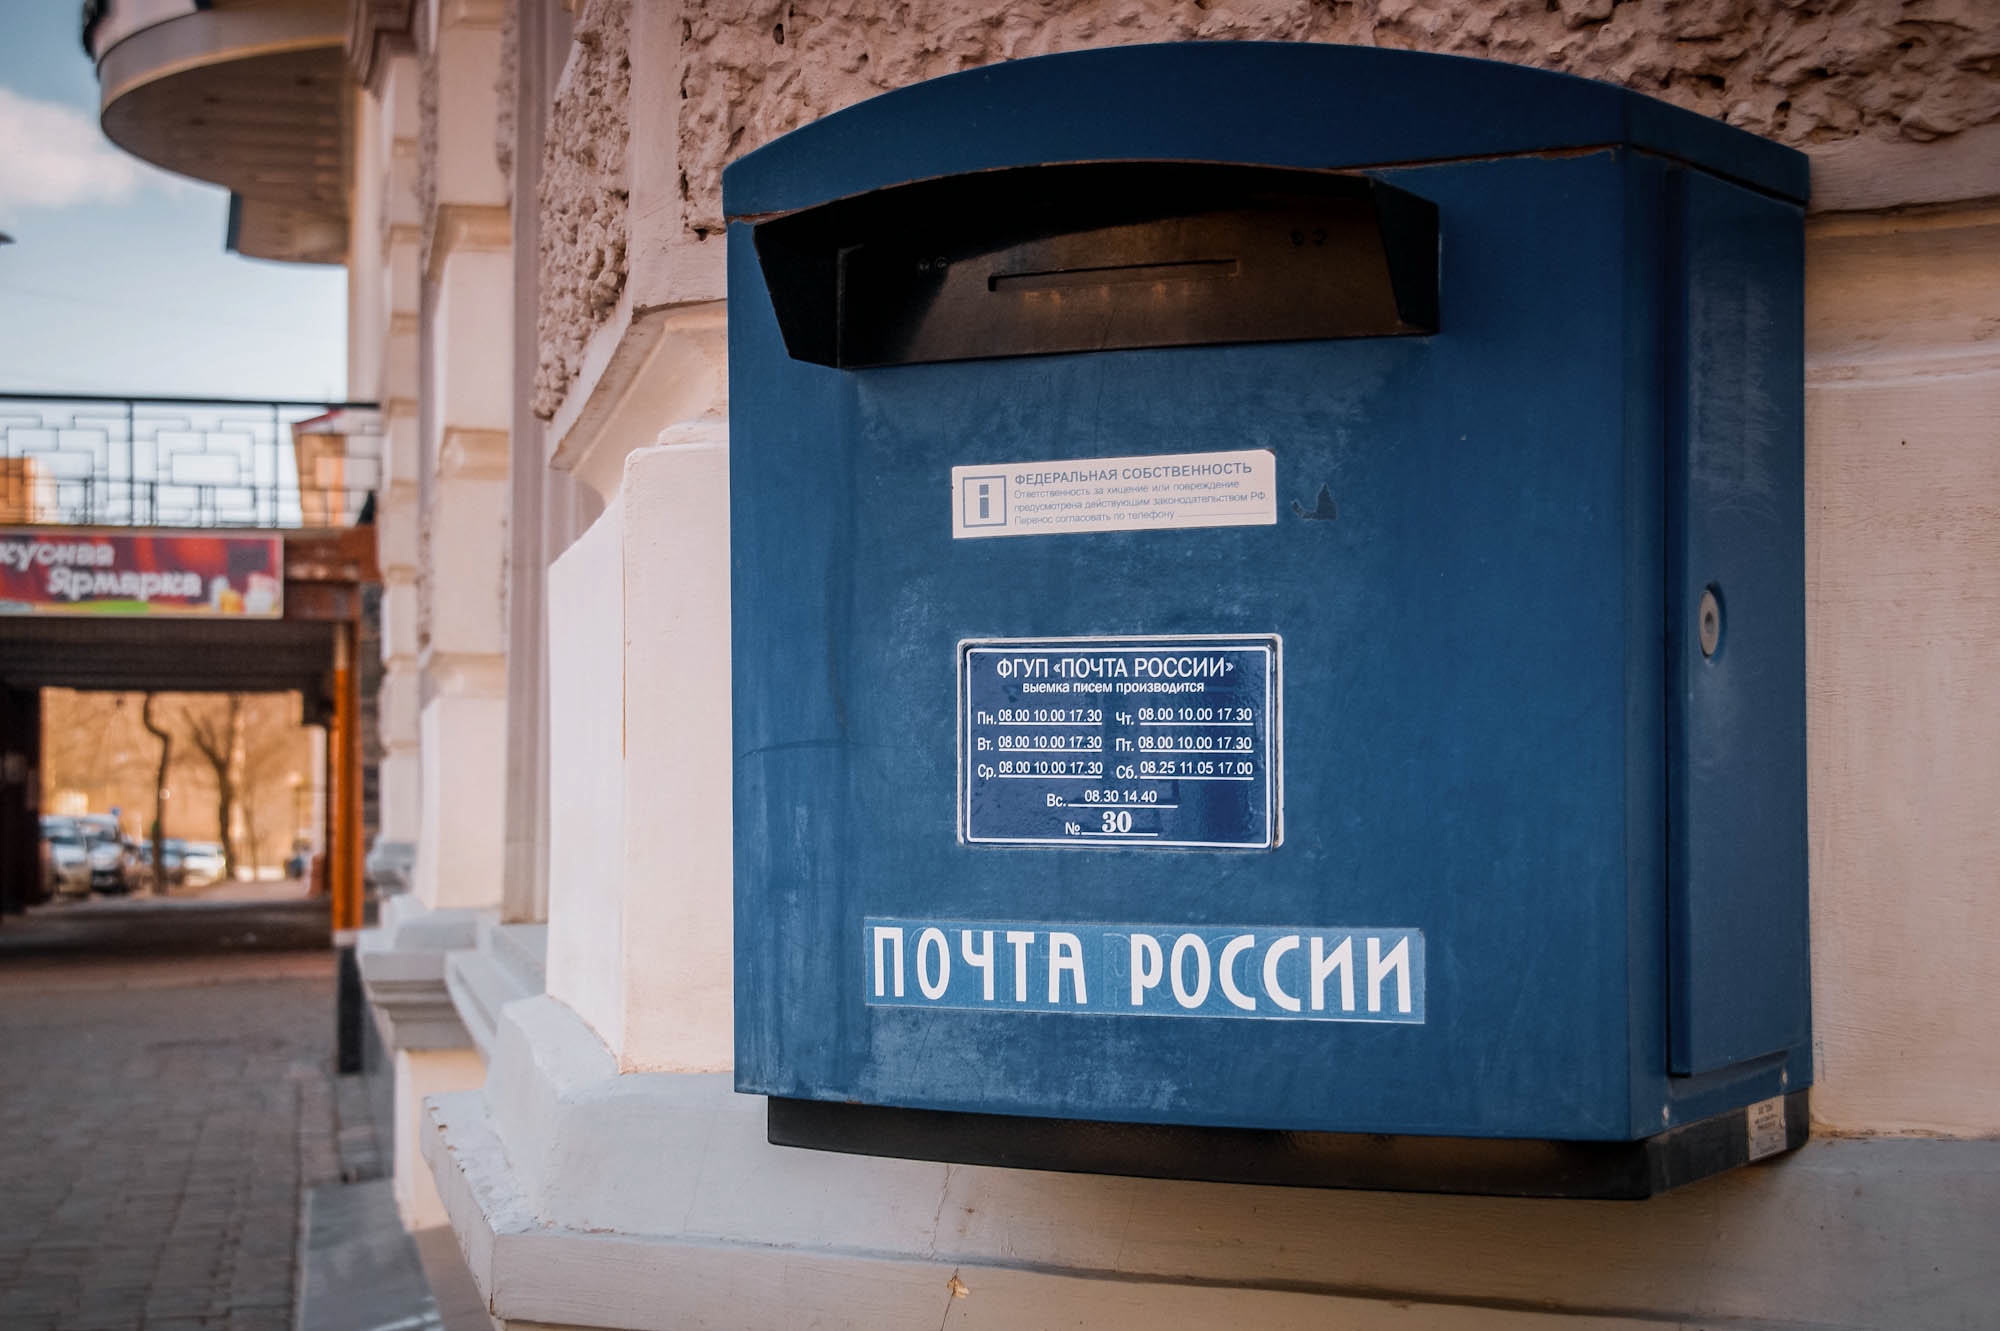 «Почта России» хочет закрыть тысячи отделений по всей стране